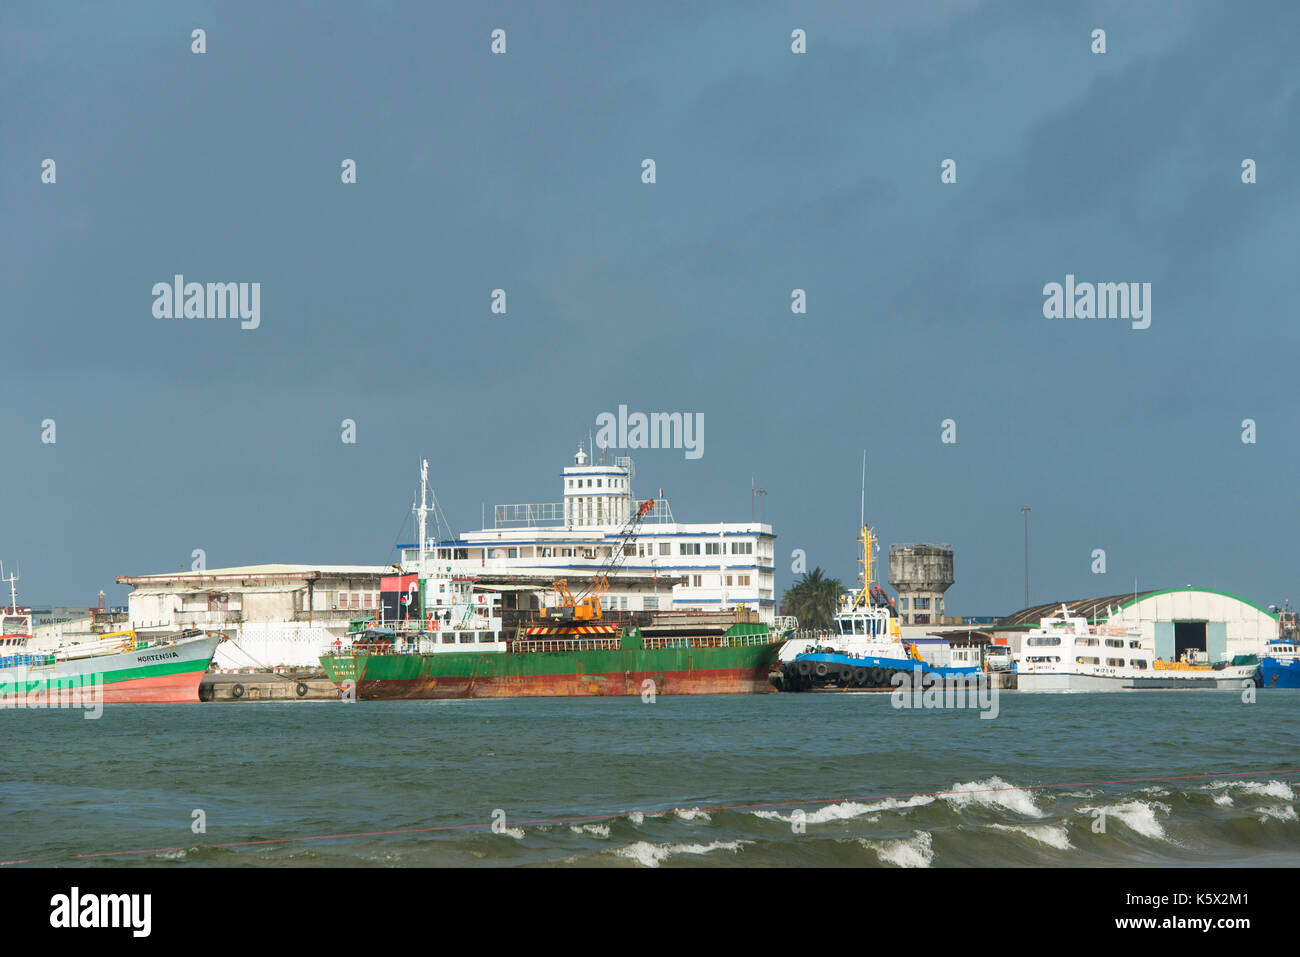 Toamasina port, Madagascar Stock Photo